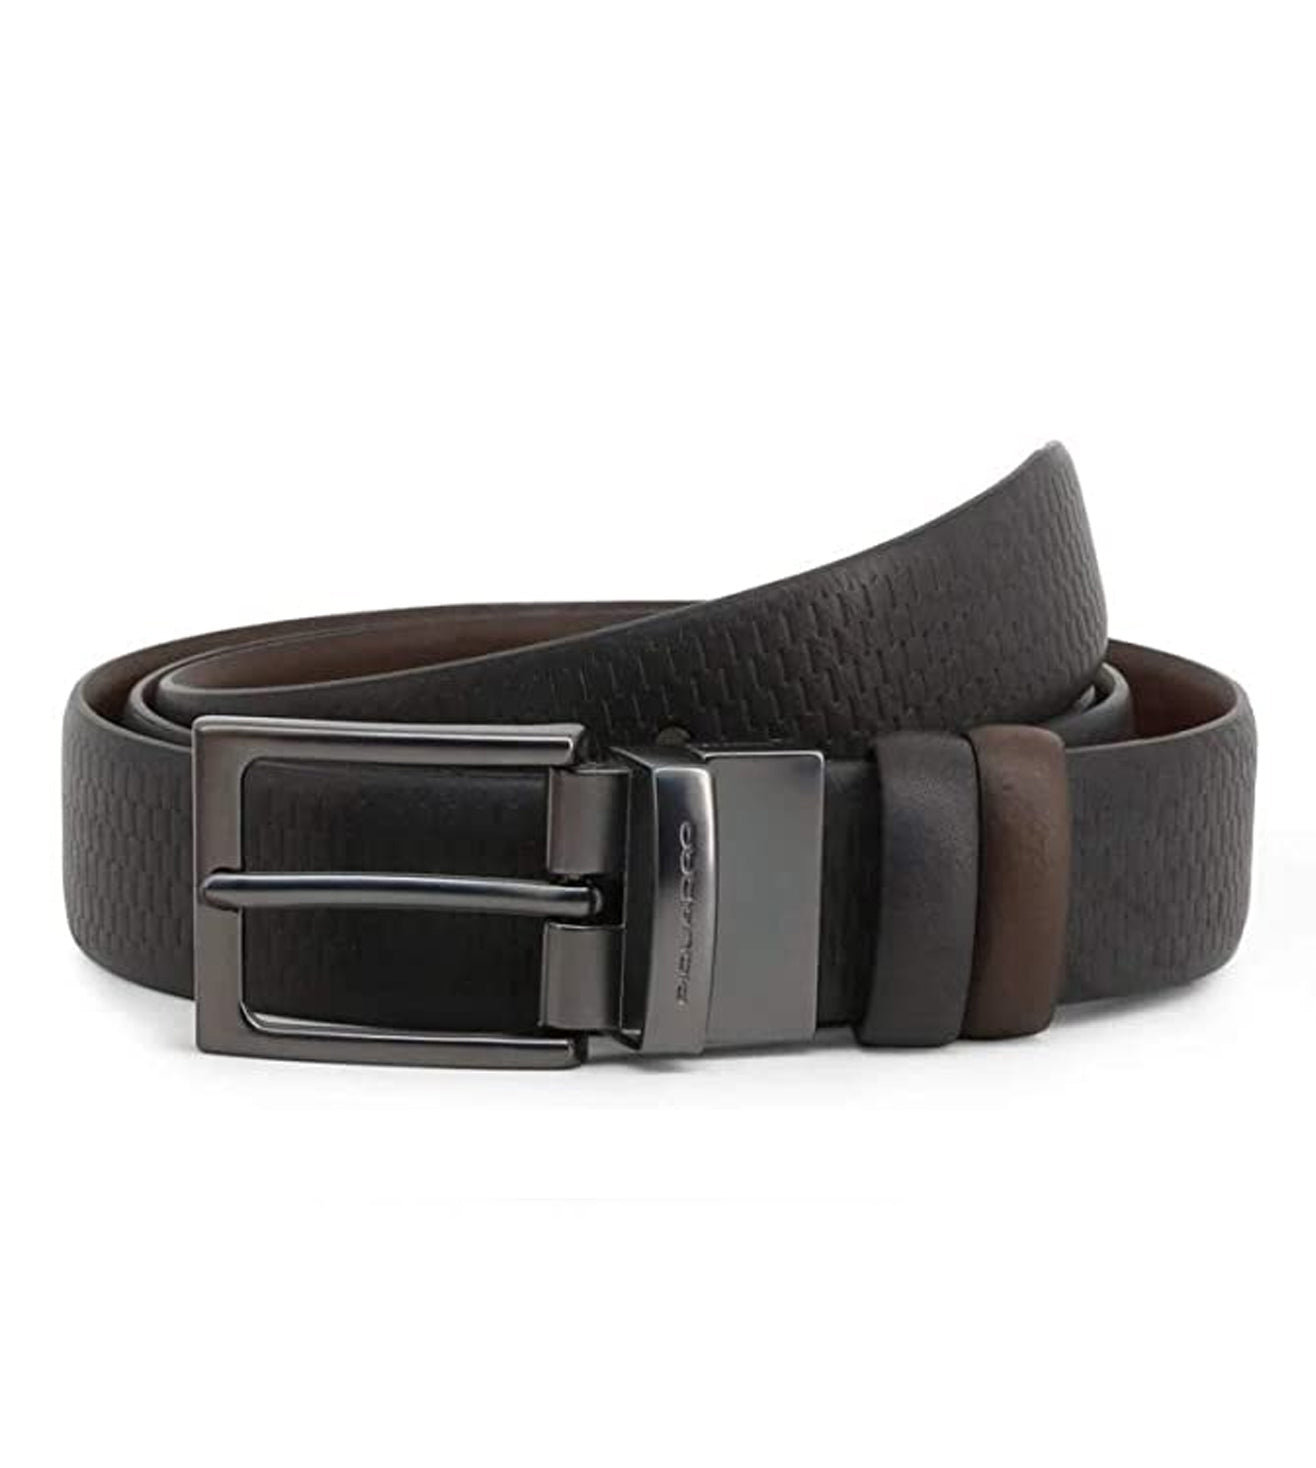 Piquadro Cintura Men's Black-Brown Reversible Belt